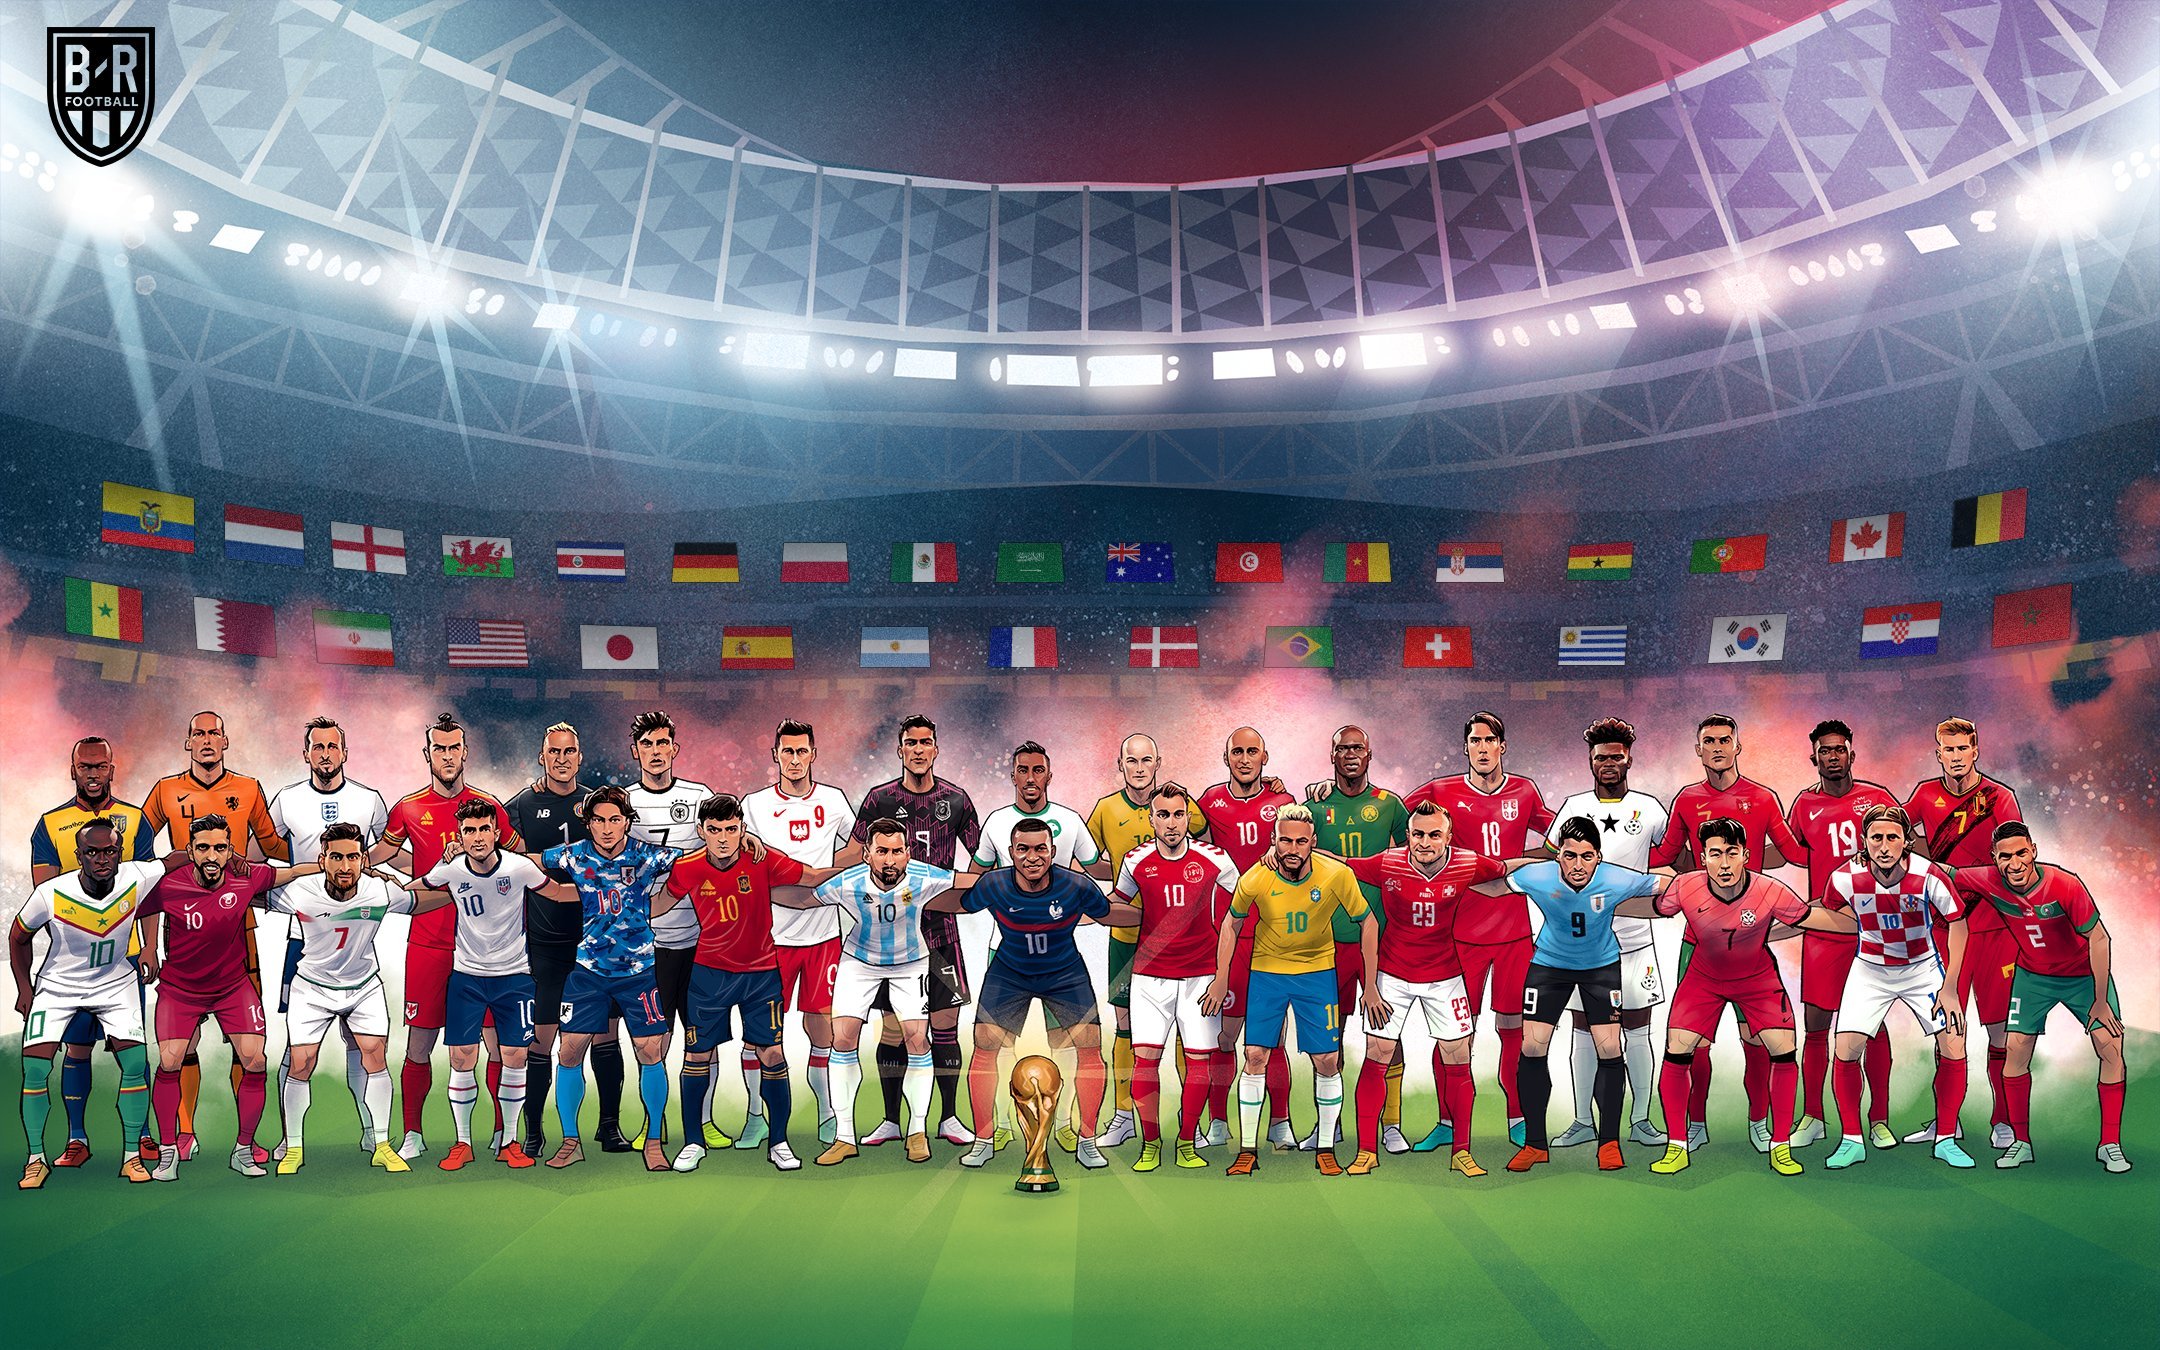 Đếm ngược đến World Cup 2022, cả thế giới đang háo hức chờ đợi sự kiện bóng đá lớn nhất hành tinh. Hãy xem hình ảnh liên quan để sẵn sàng cho những giây phút đầy cảm xúc và khát khao danh vọng của các tuyển thủ.